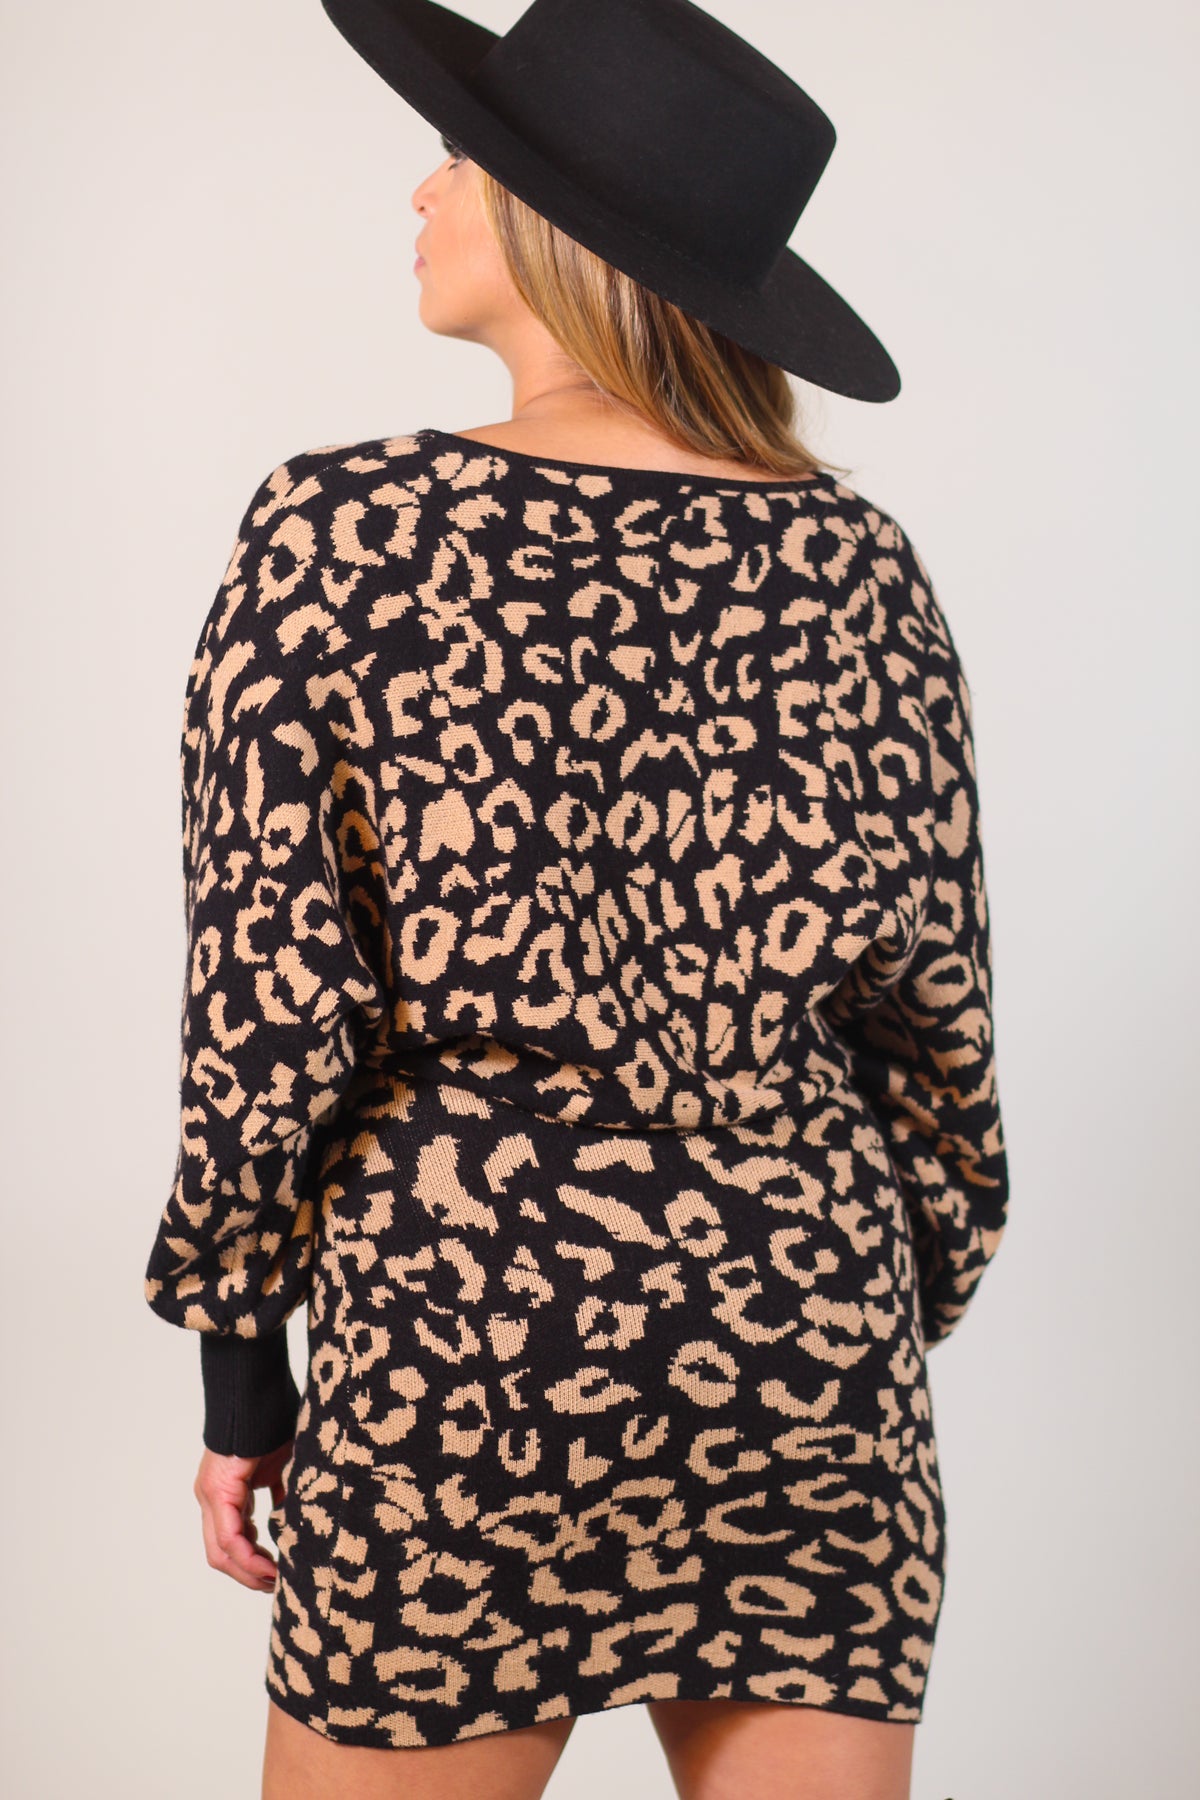 Knit Leopard Print Mini Dress